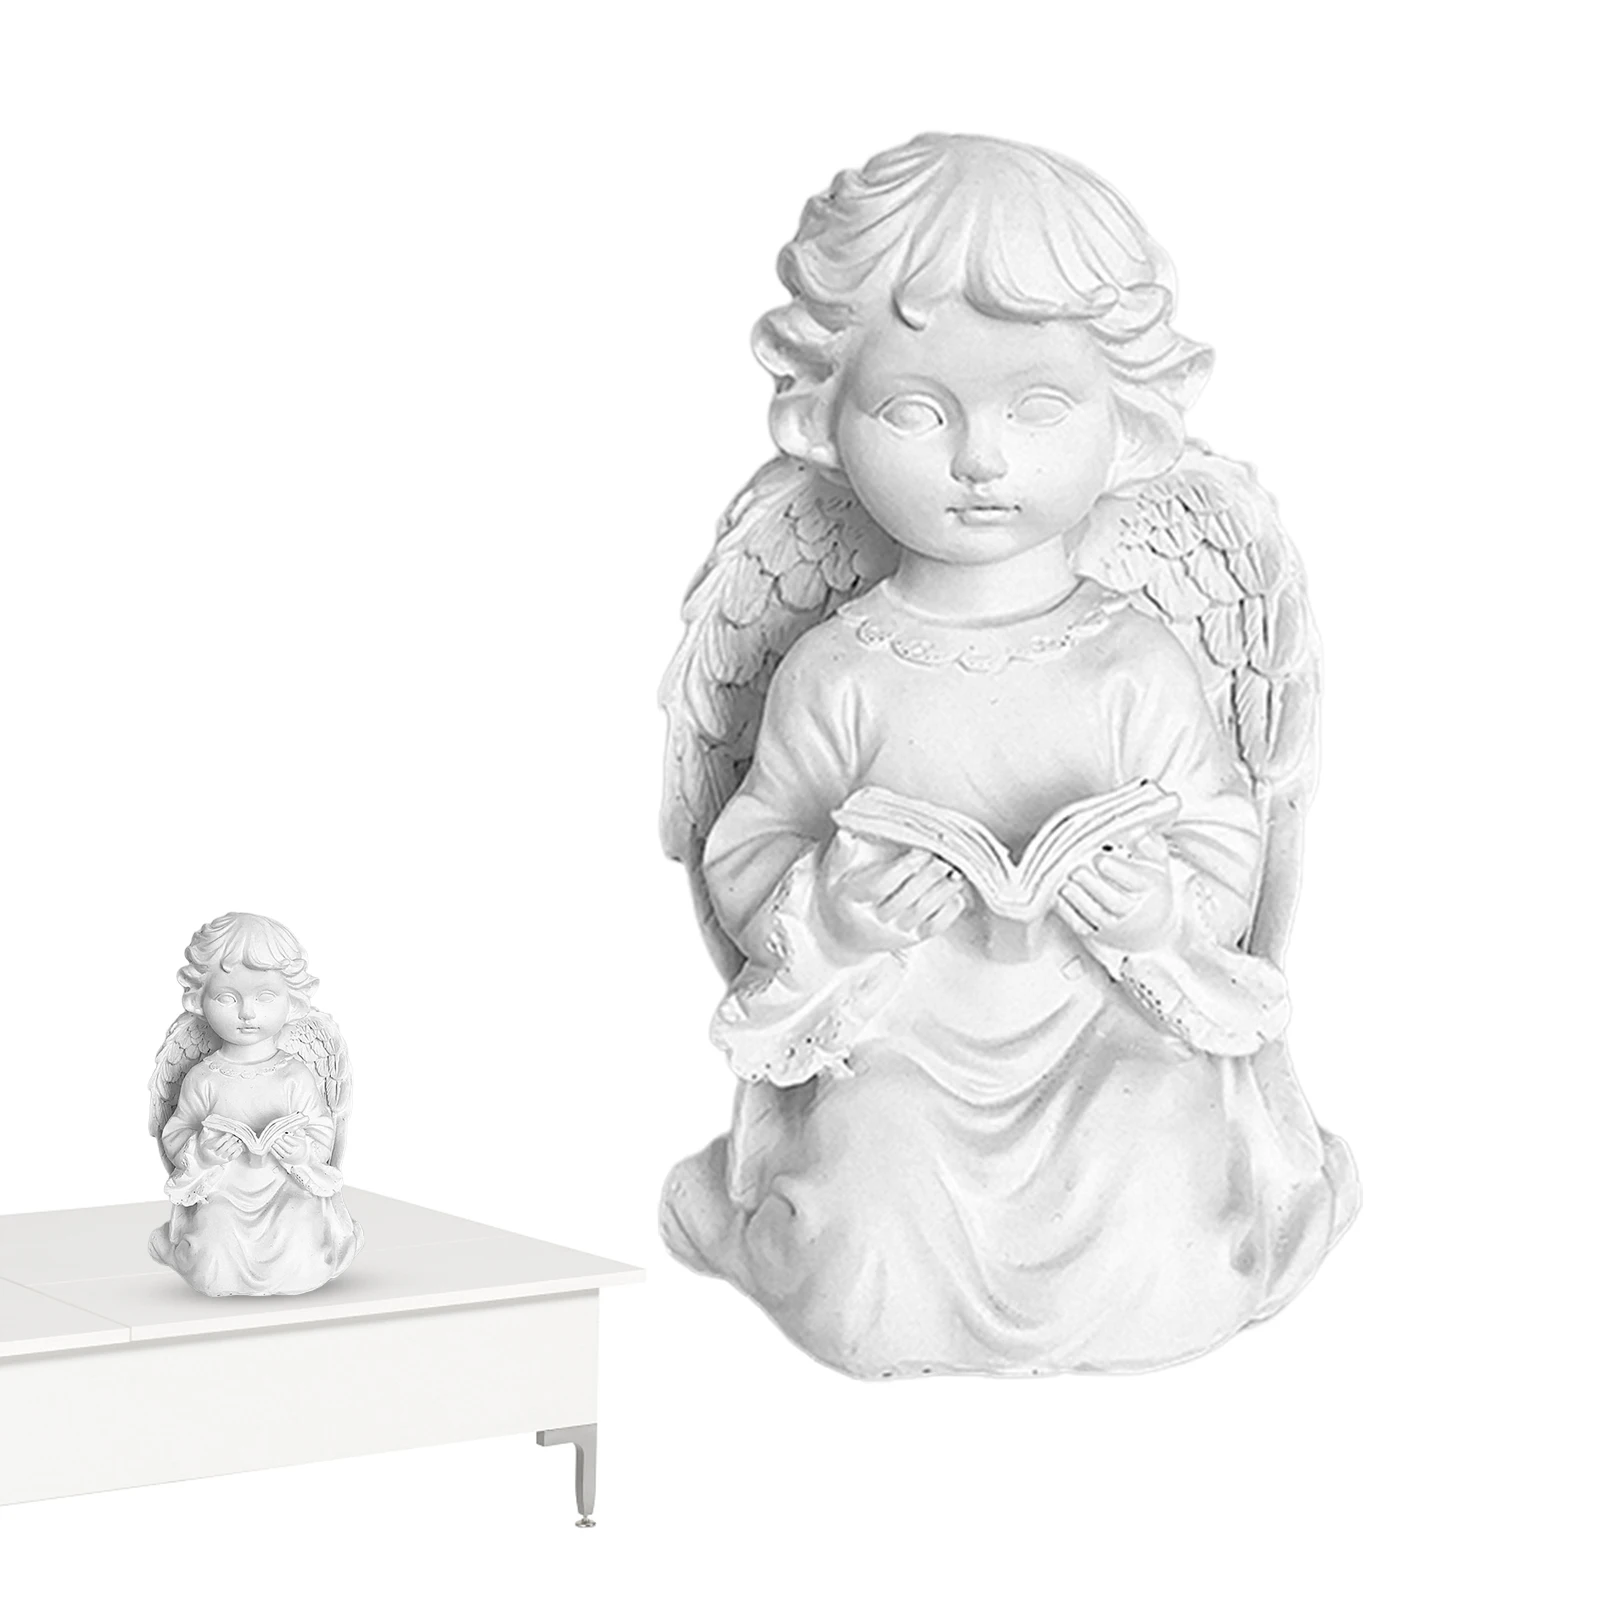 

Статуя Ангела памятная Статуя Ангела маленький ангел Памятная коллекция из смолы восхитительные статуи ангелов статуя хранителя